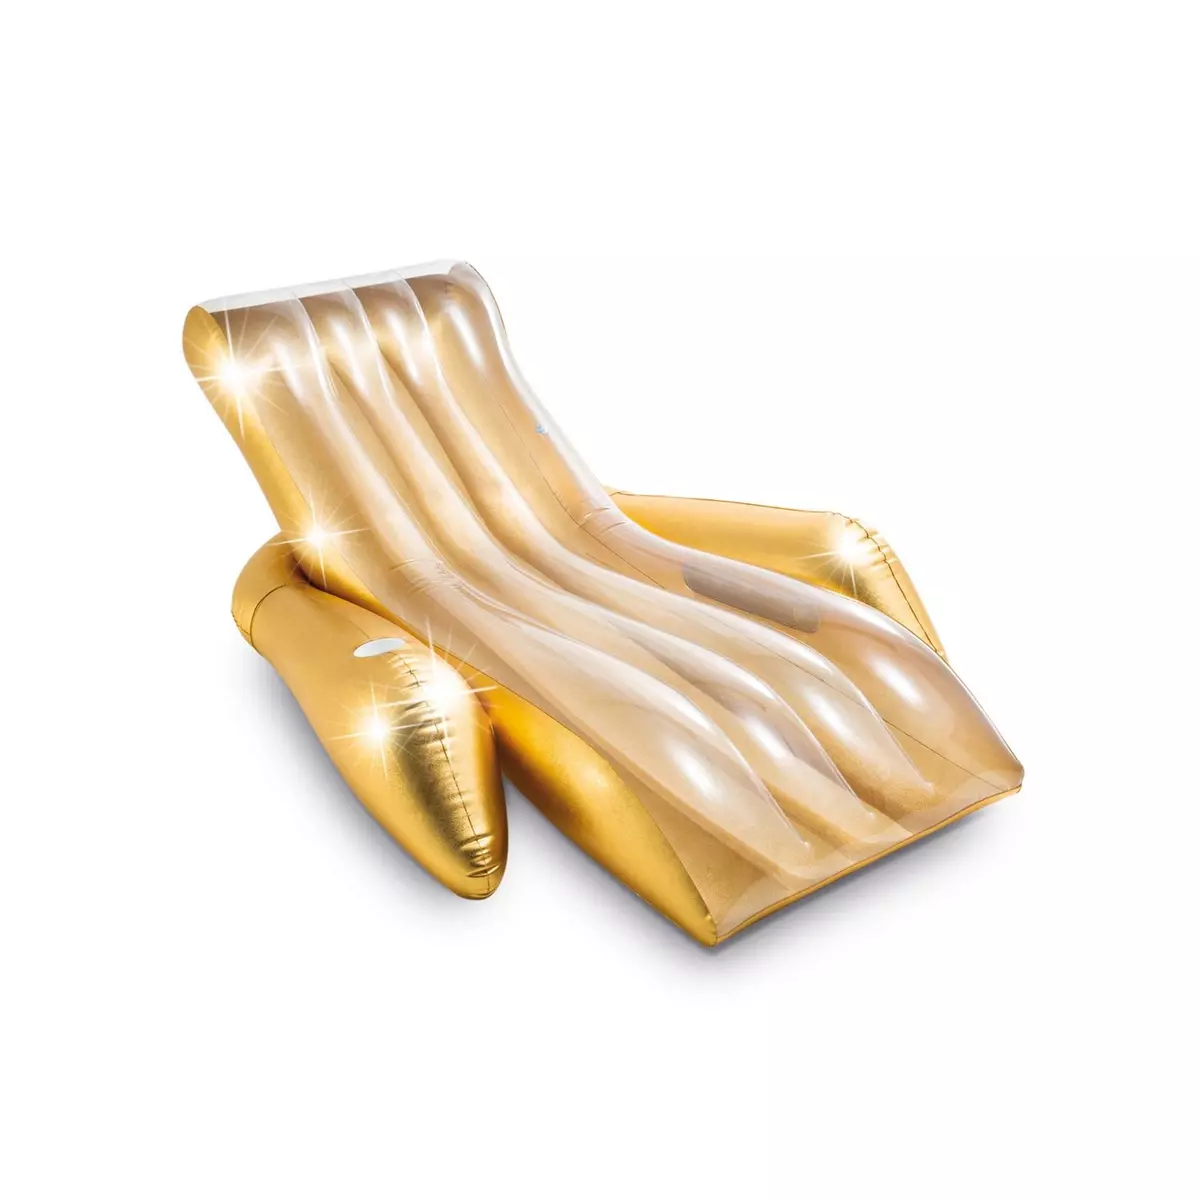 INTEX Fauteuil chaise longue pour piscine Glitter - L. 175 x H. 61 cm - Doré